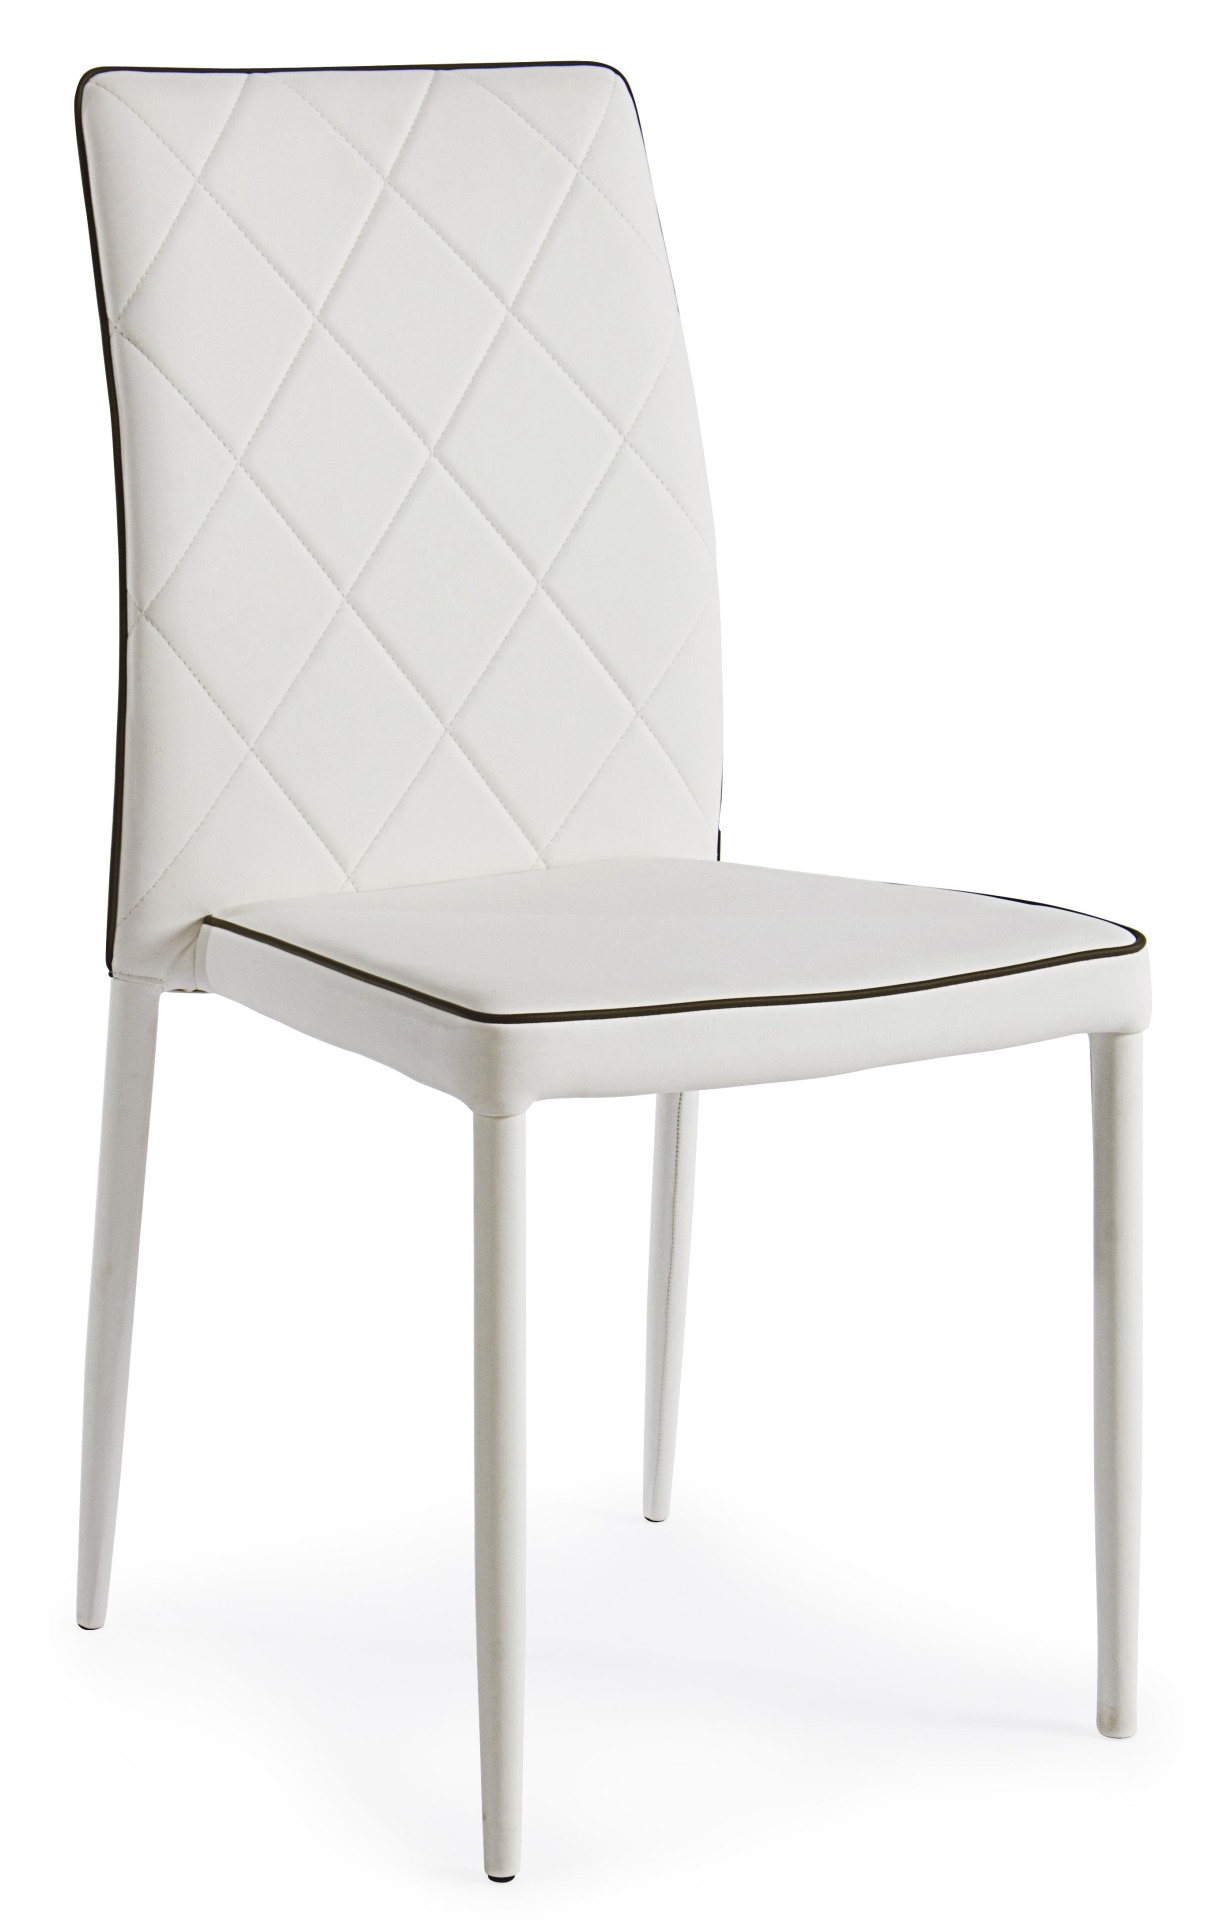 Der Stuhl Achille überzeugt mit seinem modernem Design. Gefertigt wurde der Stuhl aus Kunstleder, welches einen weißen Farbton besitzt. Das Gestell ist aus Metall und ist in der Selben Farbe wie die Sitzfläche. Der Stuhl verfügt über eine Gesteppte Rücken